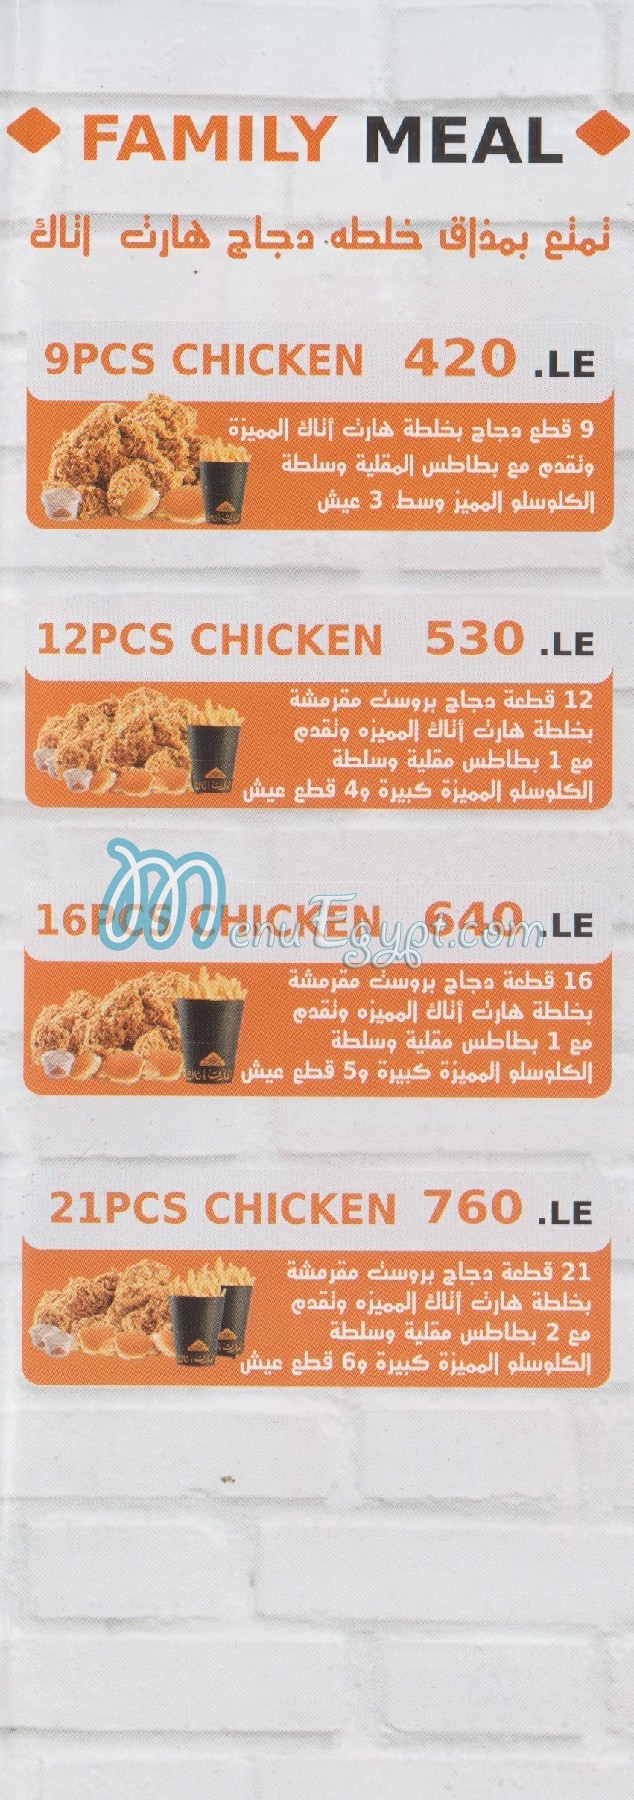 Heart Attack Fried Chicken menu prices